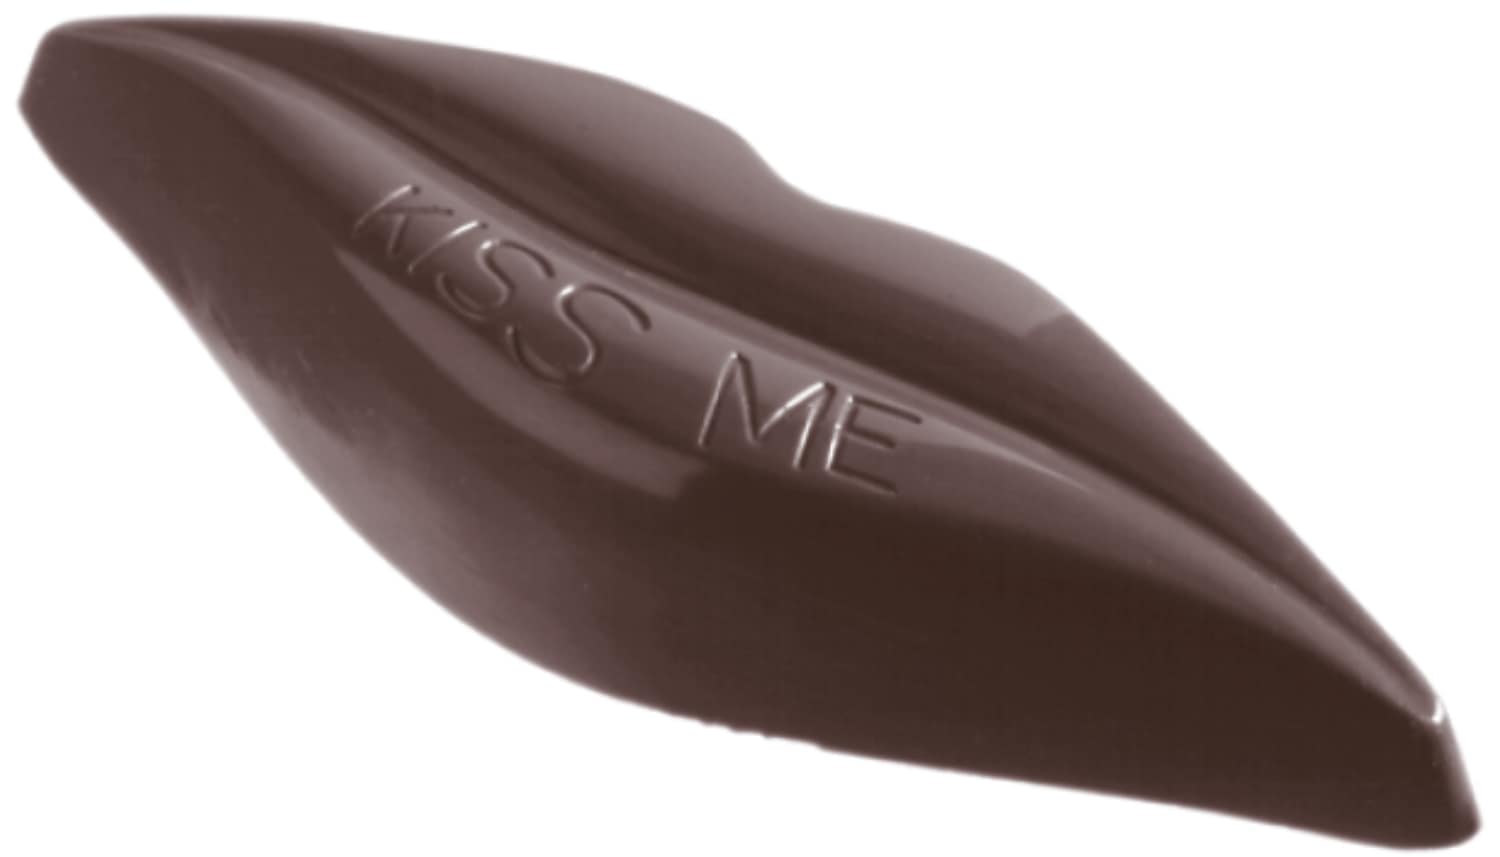 Schokoladenform "Kussmund" 421297 421297